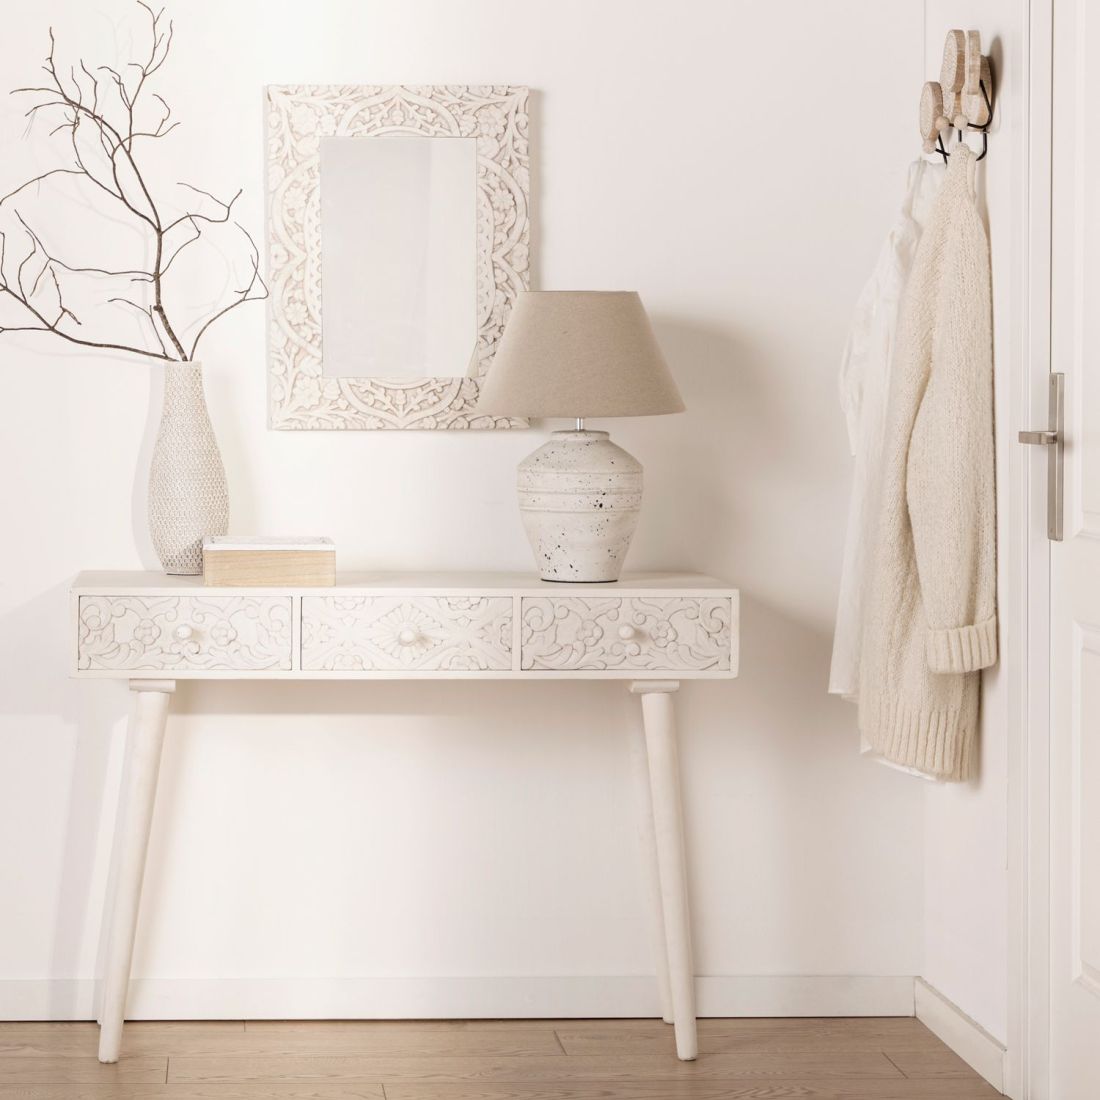 Mueble entrada de madera, Blanco - Natural